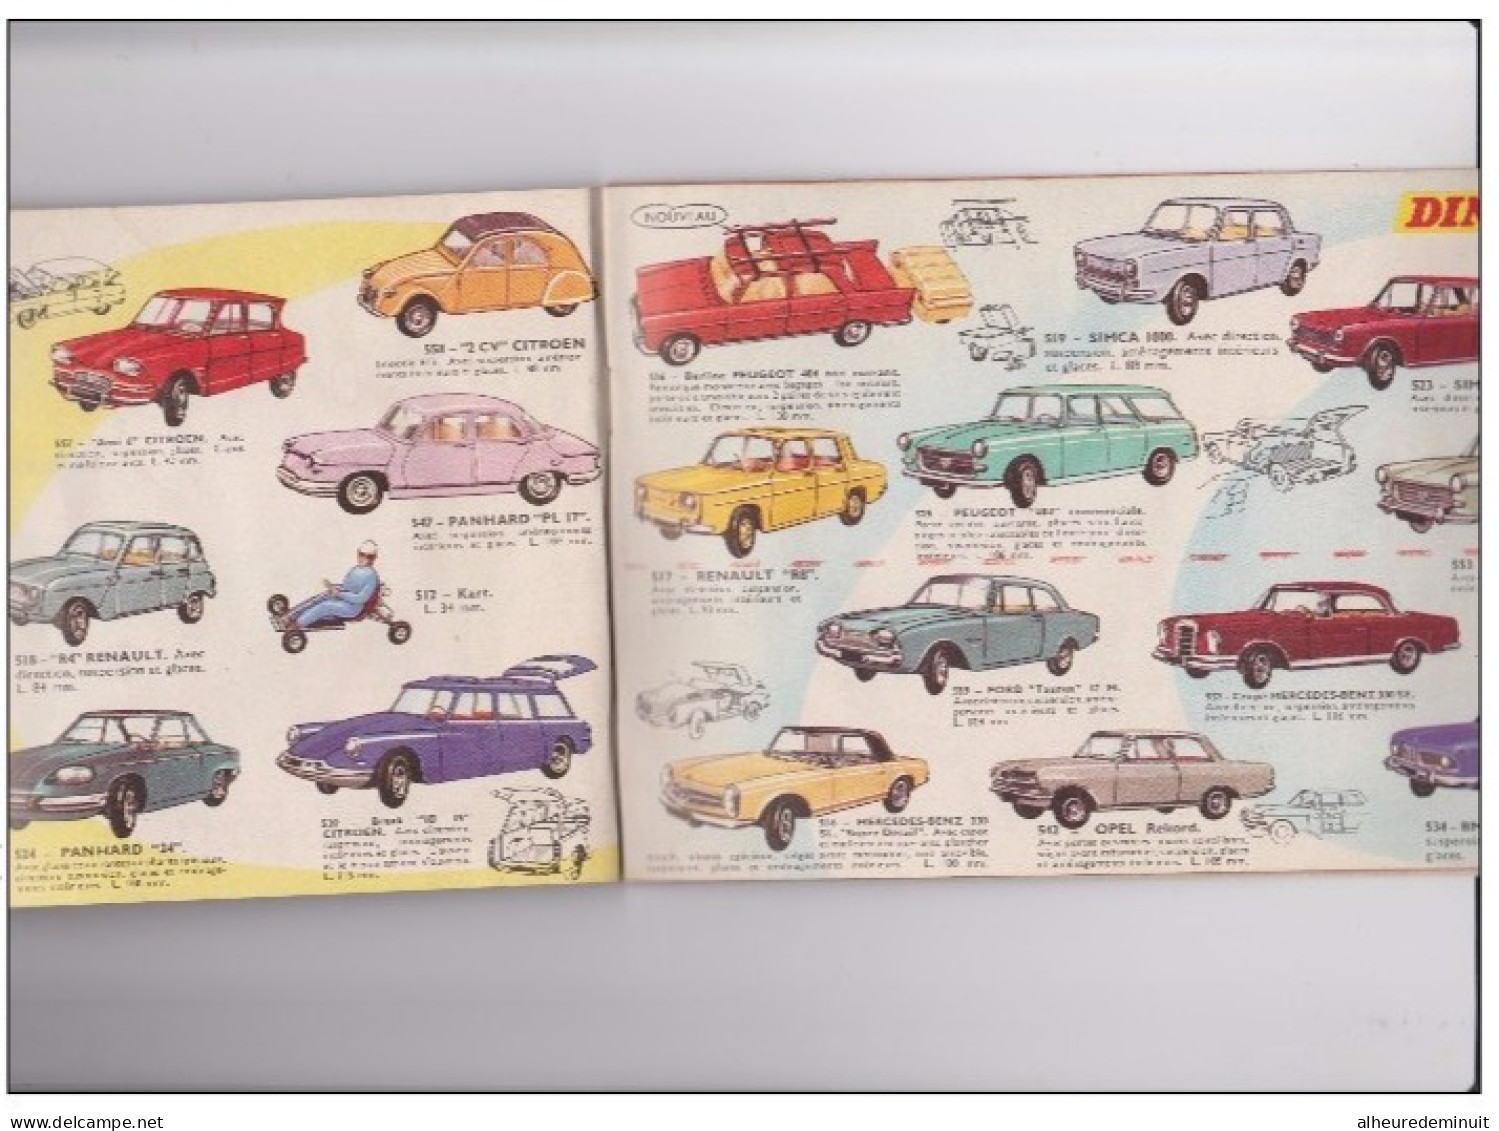 Catalogue DINKY TOYS"SUPERTOYS"1965/1966"voiture Miniature"autobus"camions"militaire"maquette"DS"Peugeot"Renault"Citroën - Zeitschriften